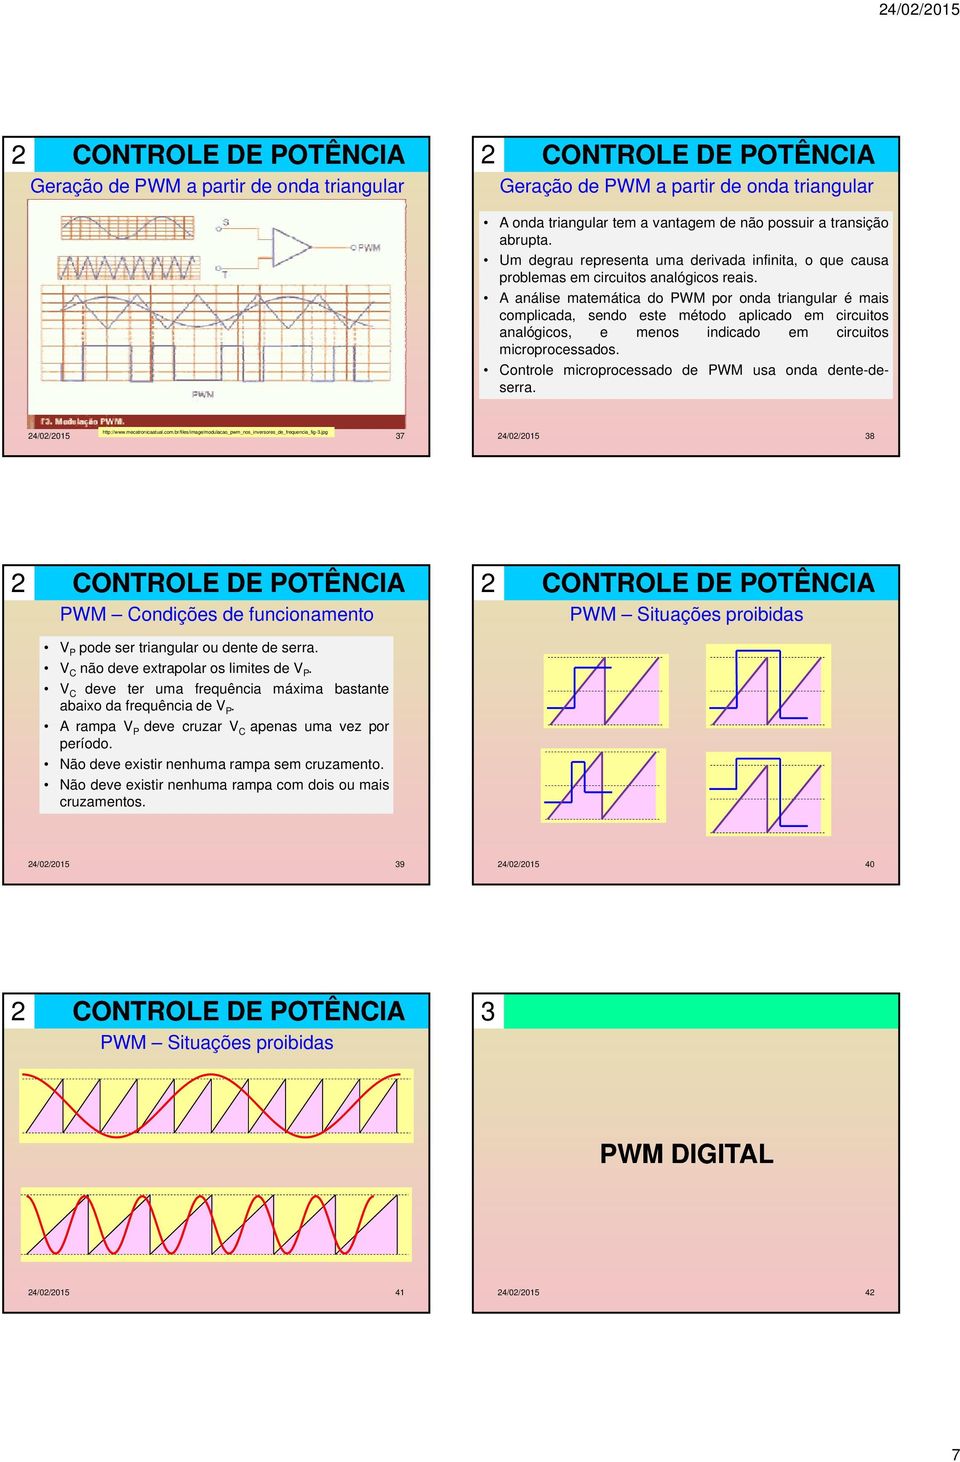 A análise maemáica do PW por onda riangular é mais complicada, sendo ese méodo aplicado em circuios analógicos, e menos indicado em circuios microprocessados.